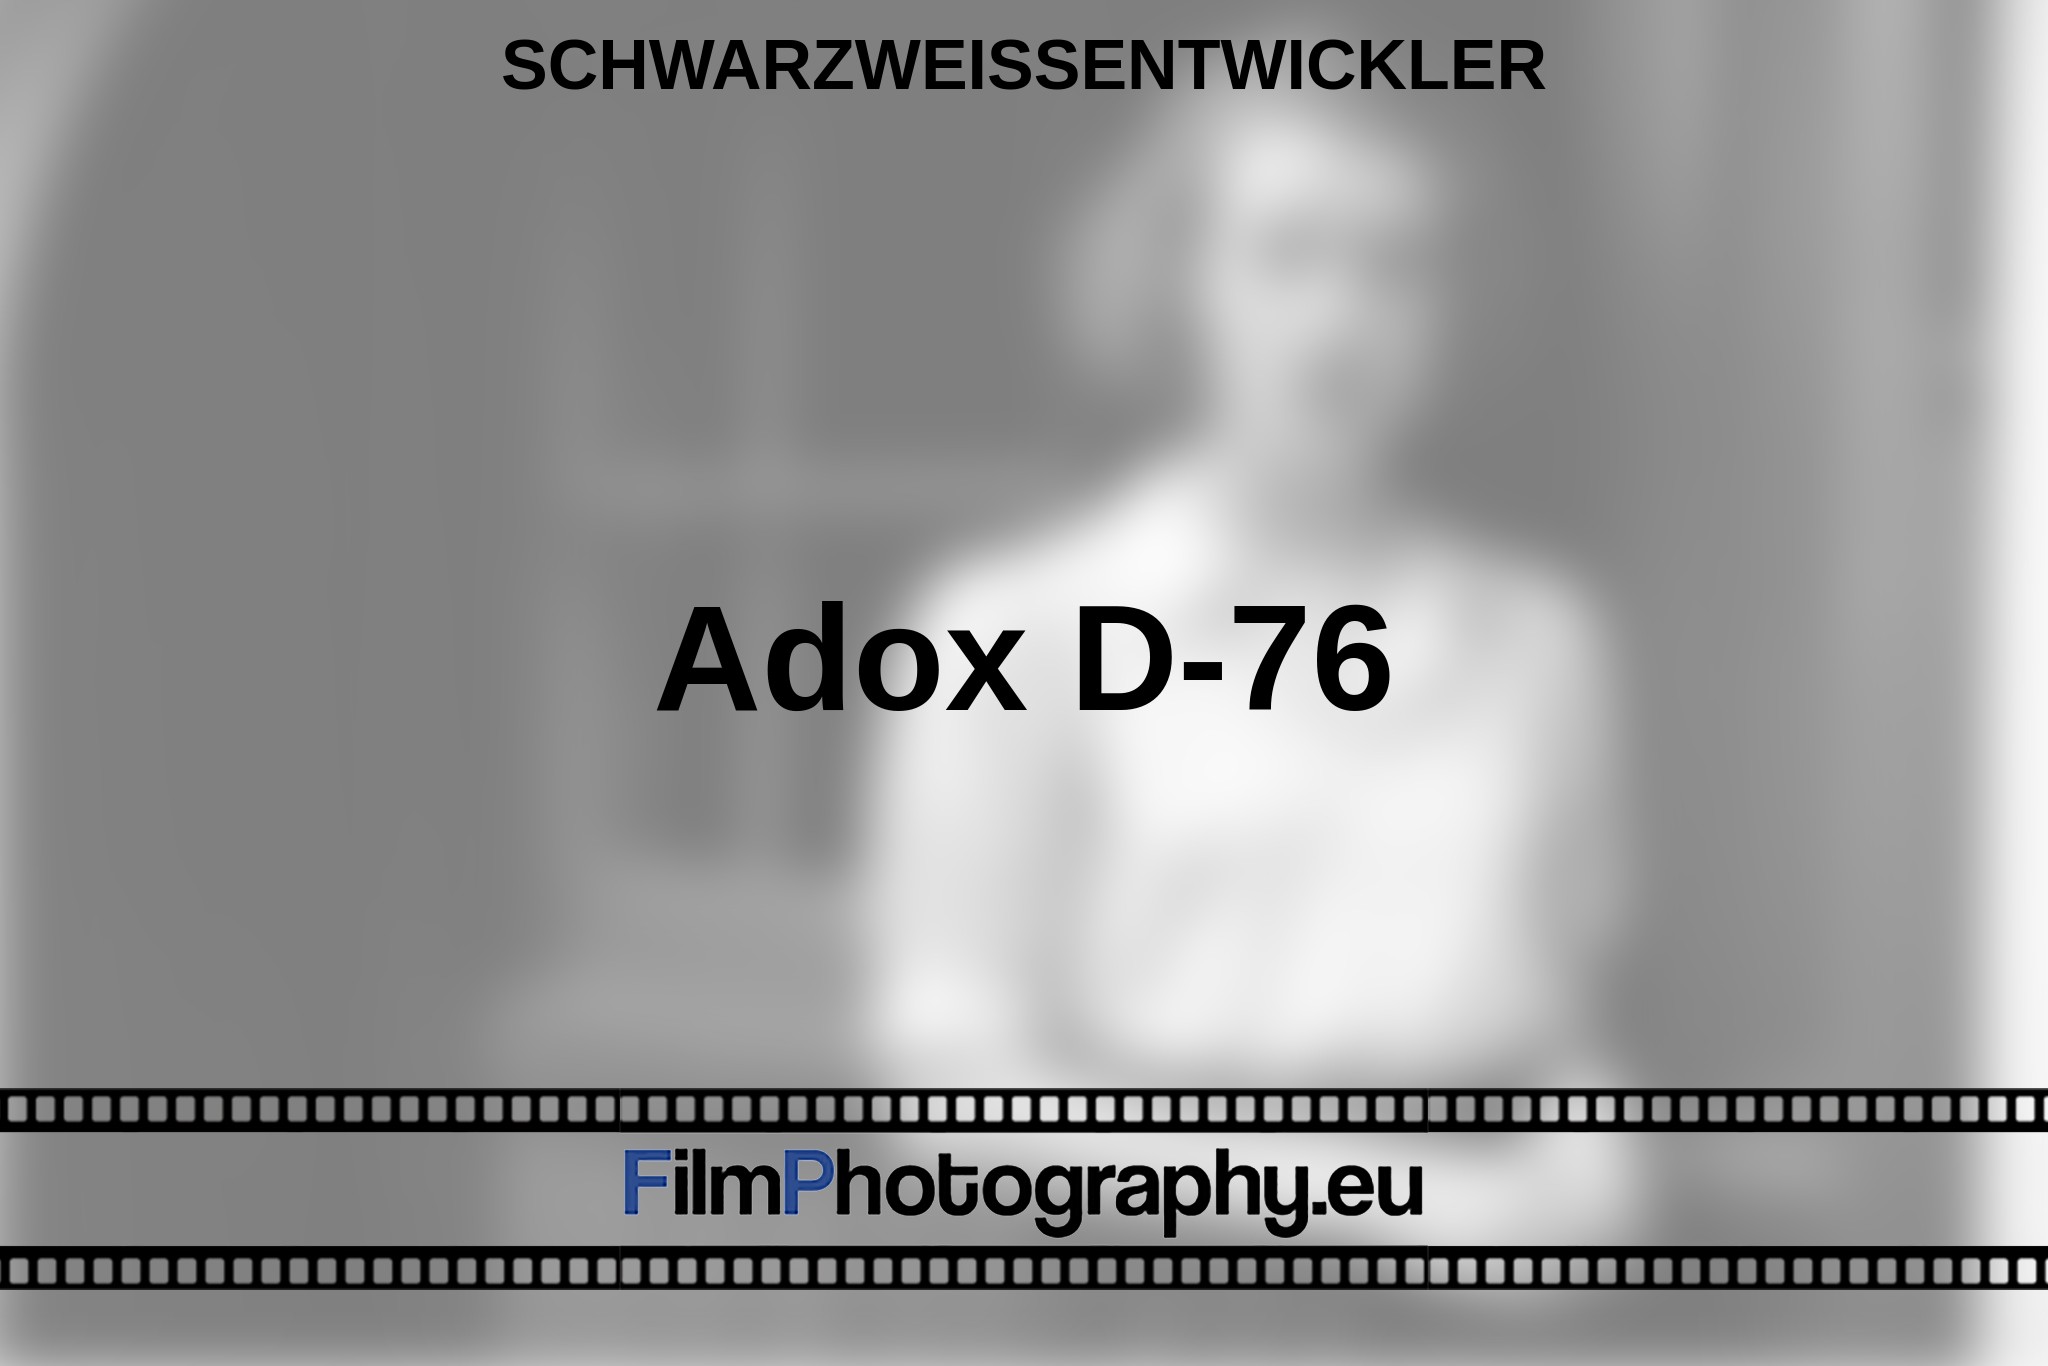 adox-d-76-schwarzweißentwickler-bnv.jpg